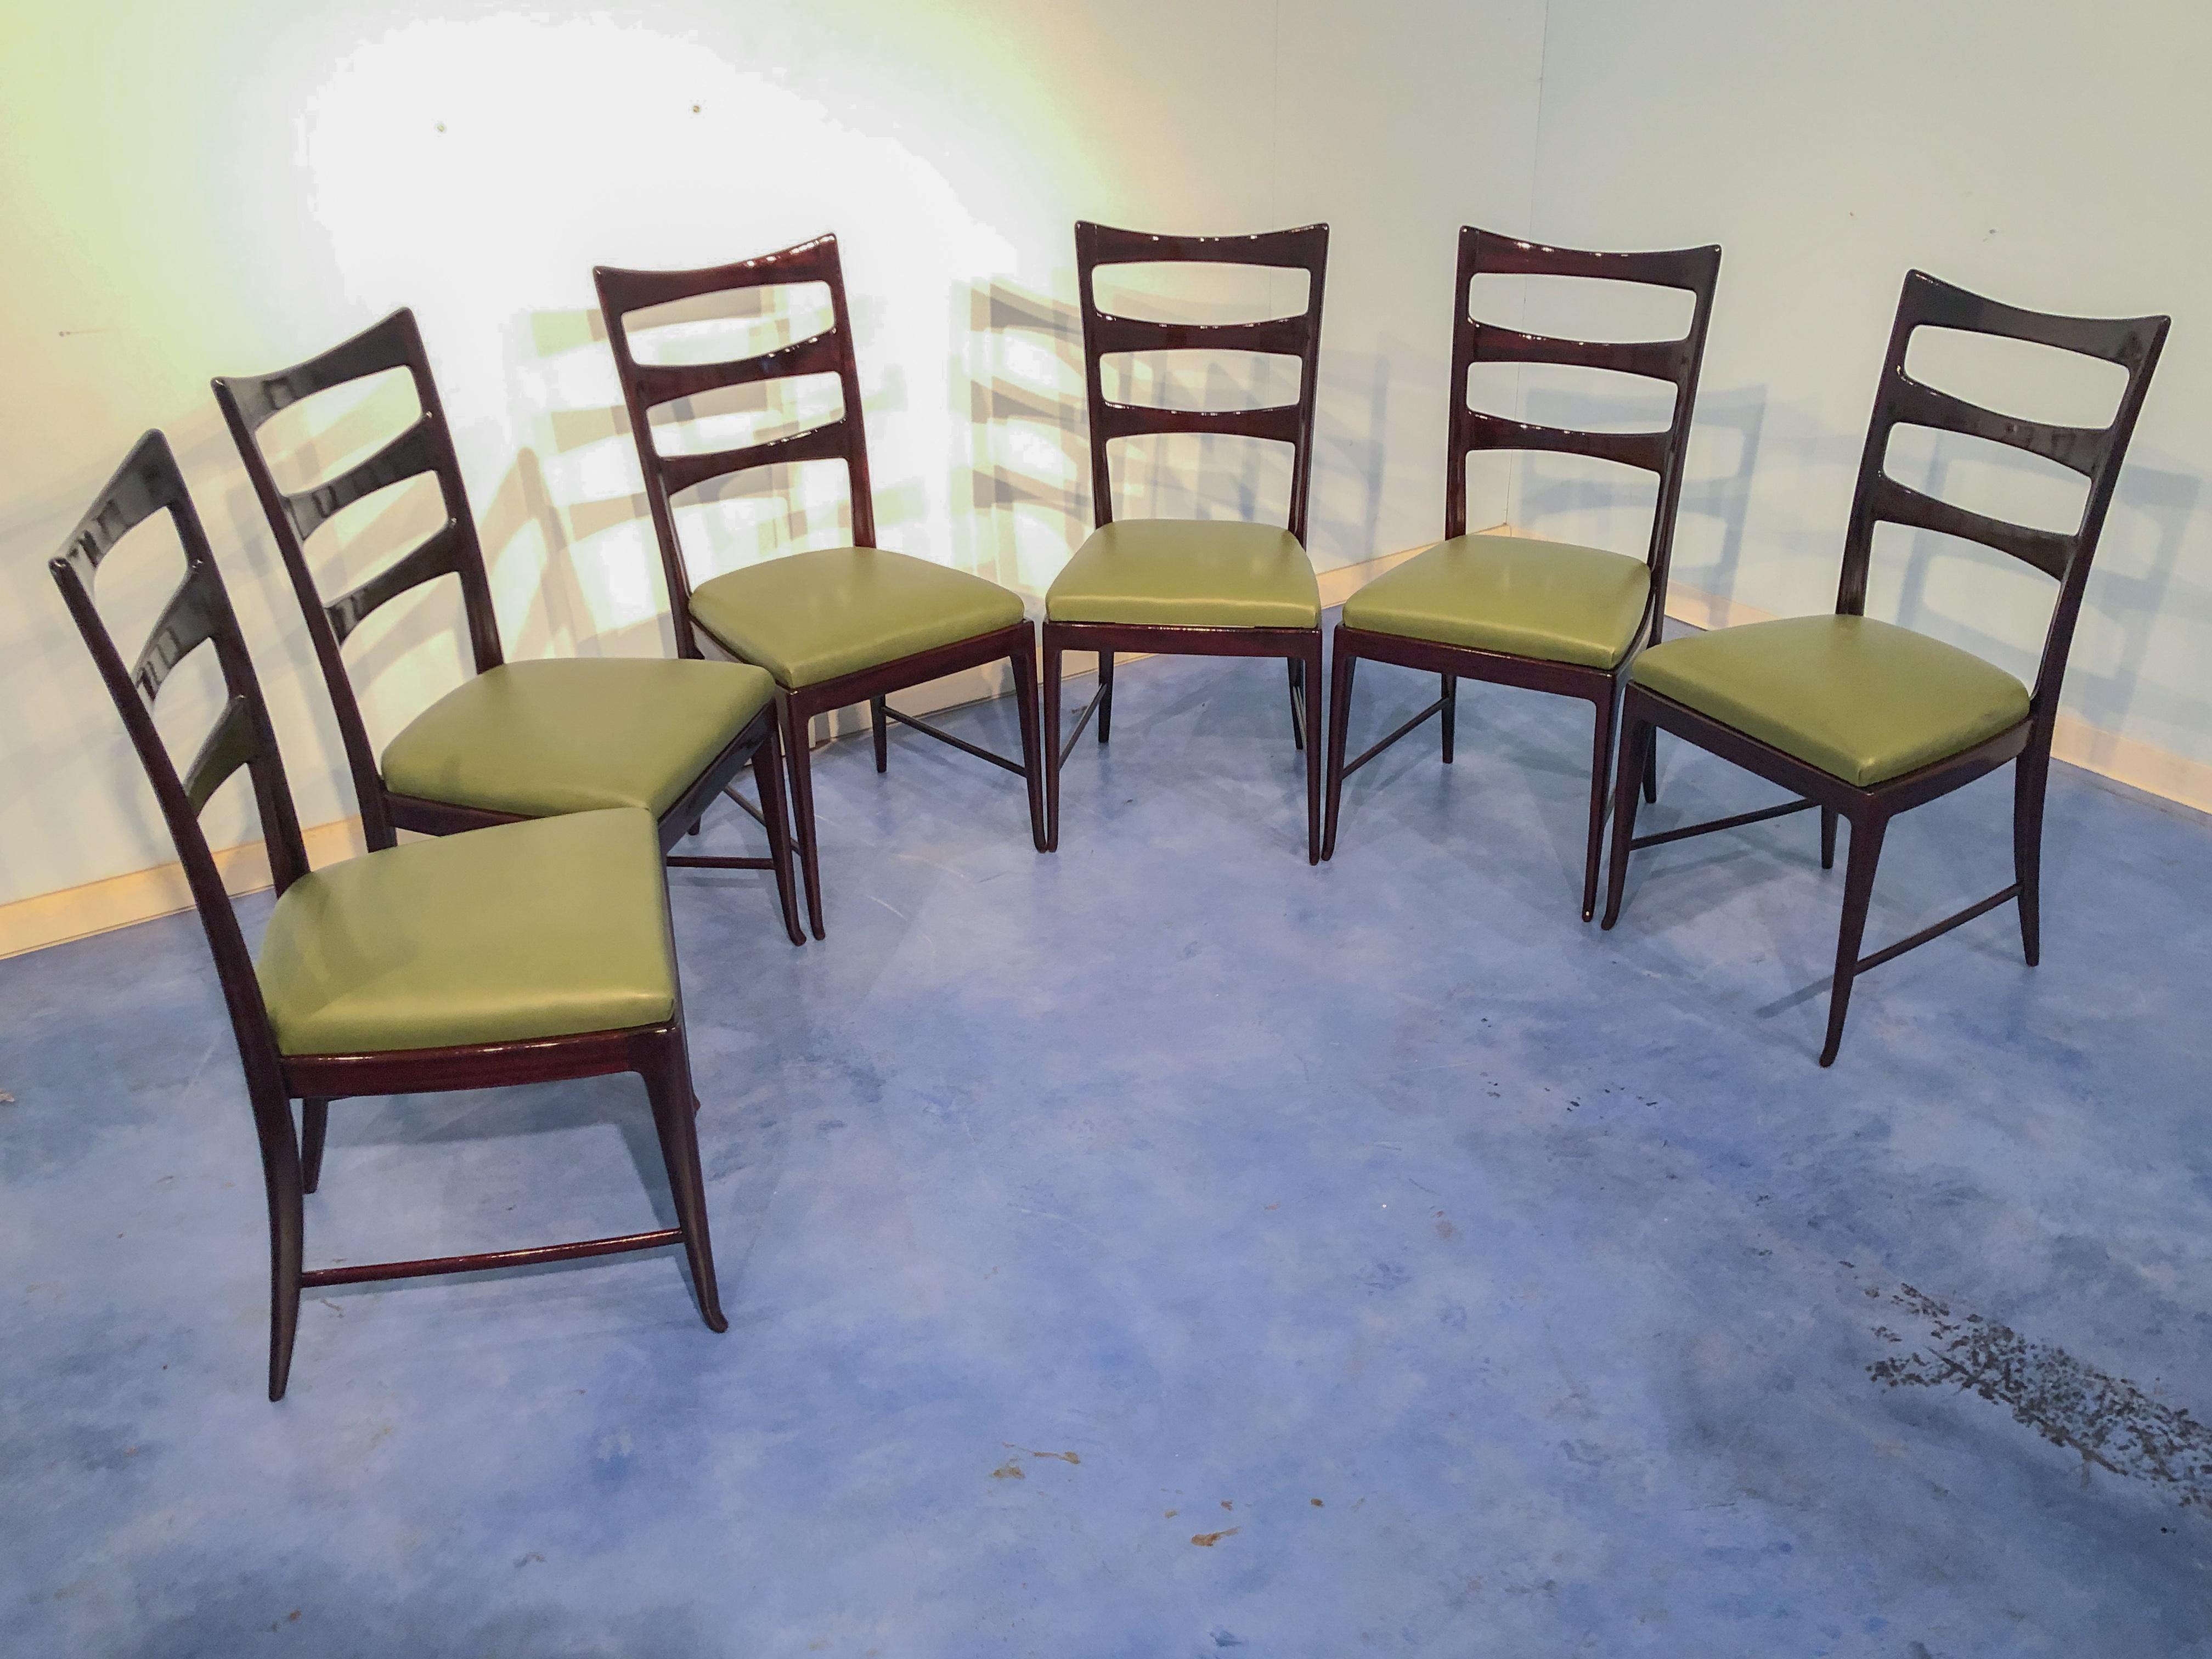 Ein prächtiges Set aus sechs Esszimmerstühlen von Vittorio Dassi aus den 1950er Jahren, Mitte des Jahrhunderts. Die elegante Linie zeichnet sich durch hohe Rückenlehnen aus. Mahagonistruktur, schöne bordeauxrote Farbe bei Licht. In sehr gutem